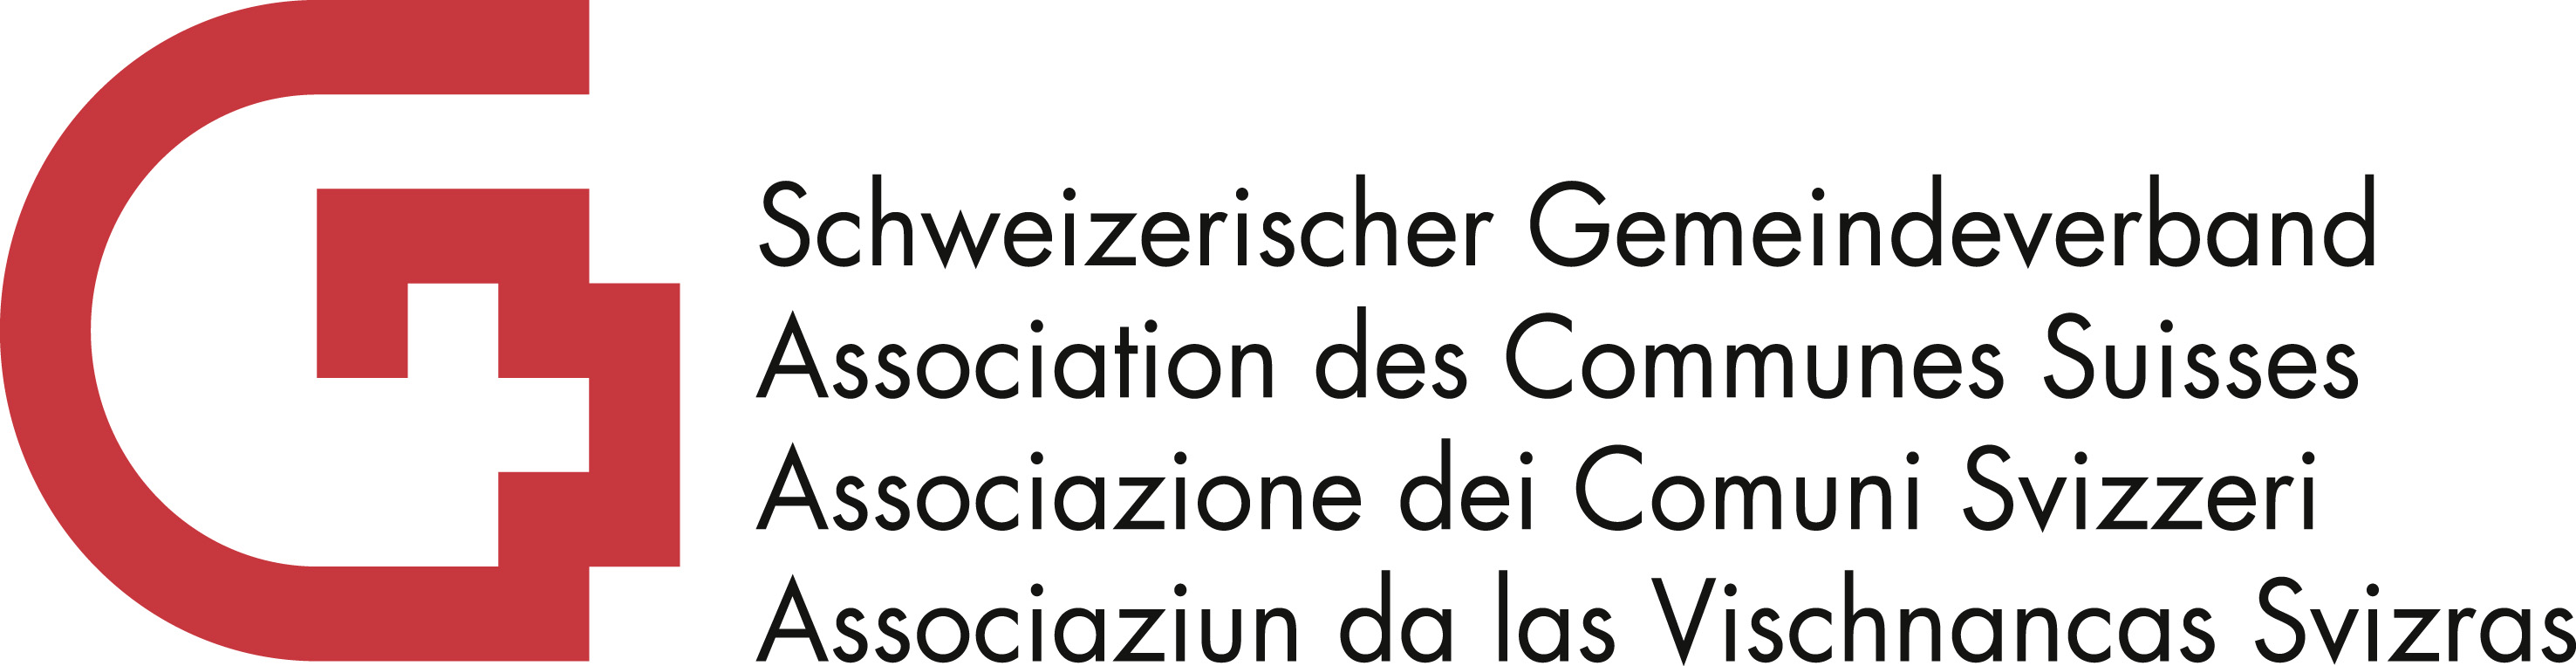 Schweizerischer Gemeindeverband (SGV)